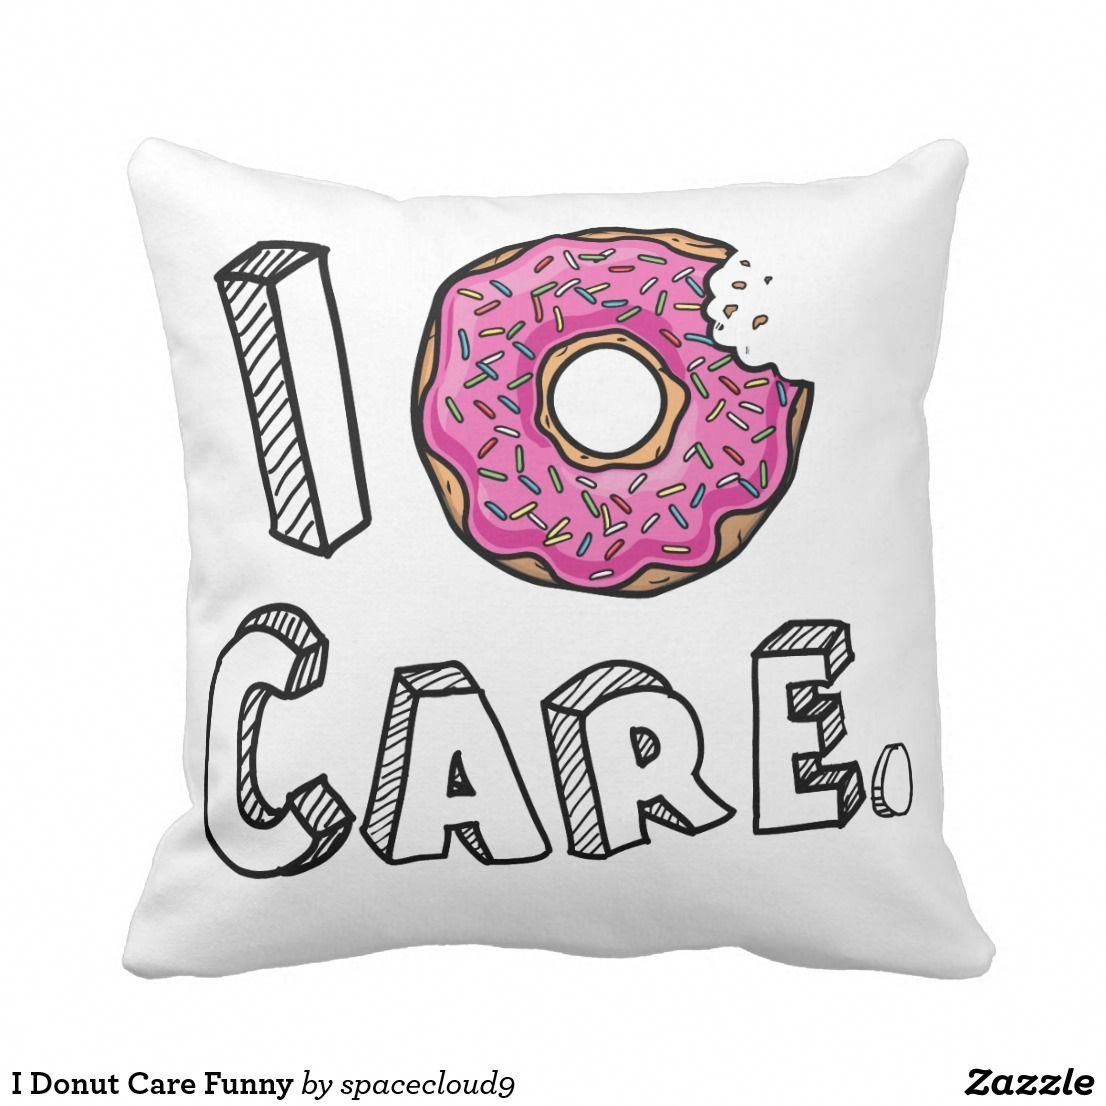 I Donut Care Funny Throw Pillow | Zazzle.com - I Donut Care Funny Throw Pillow | Zazzle.com -   17 diy Pillows chair ideas